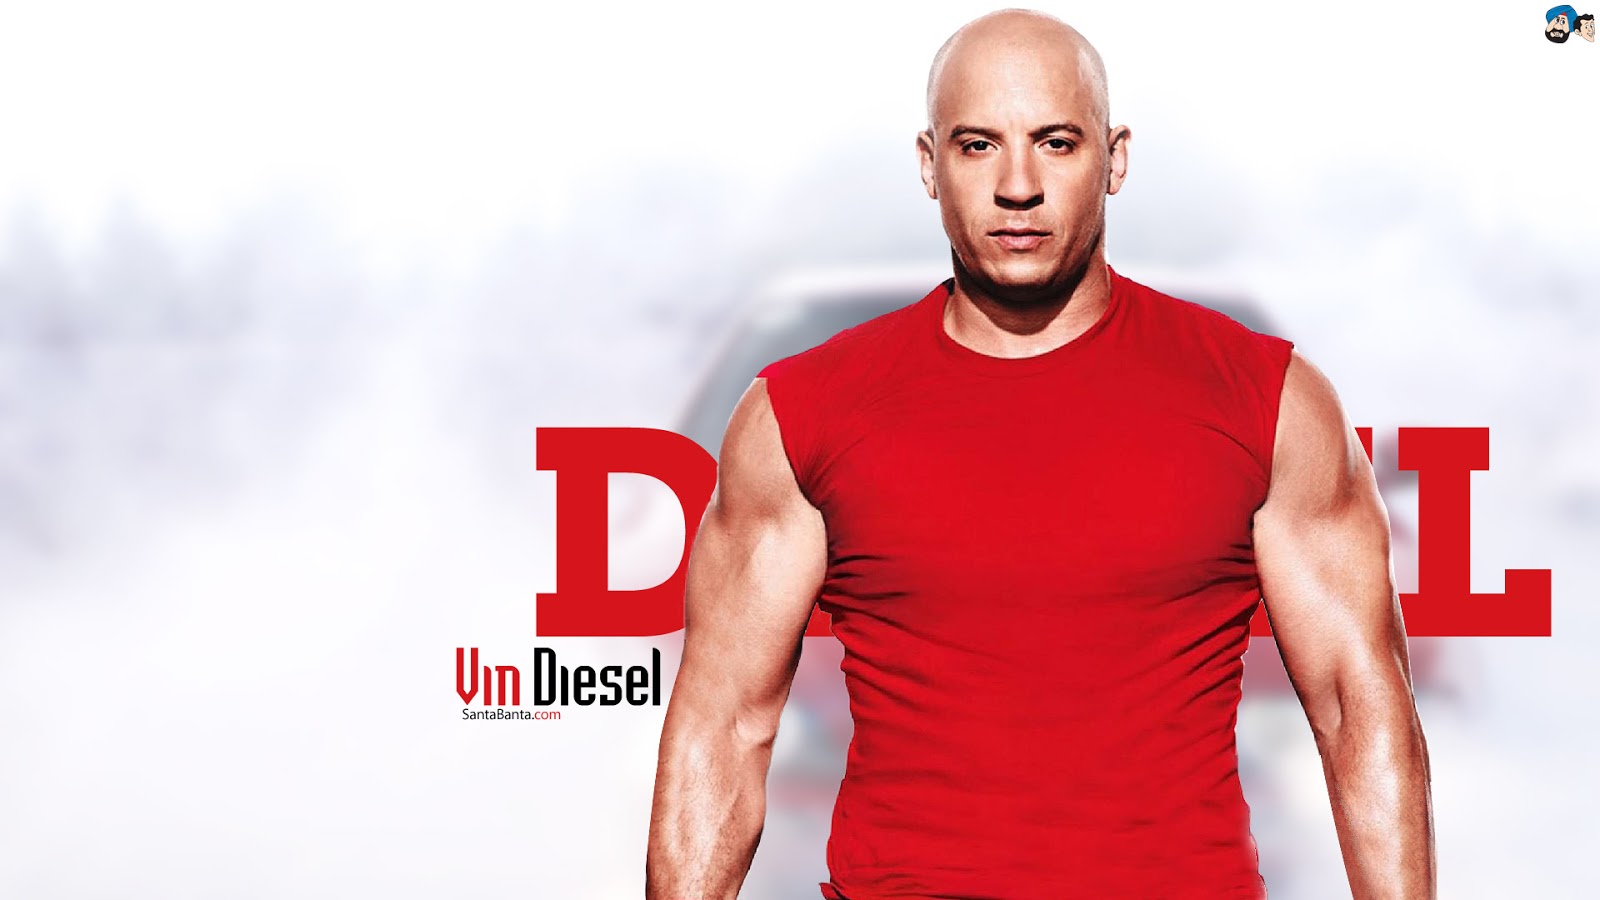 Vin Diesel HD Wallpapers Free Wallpaper